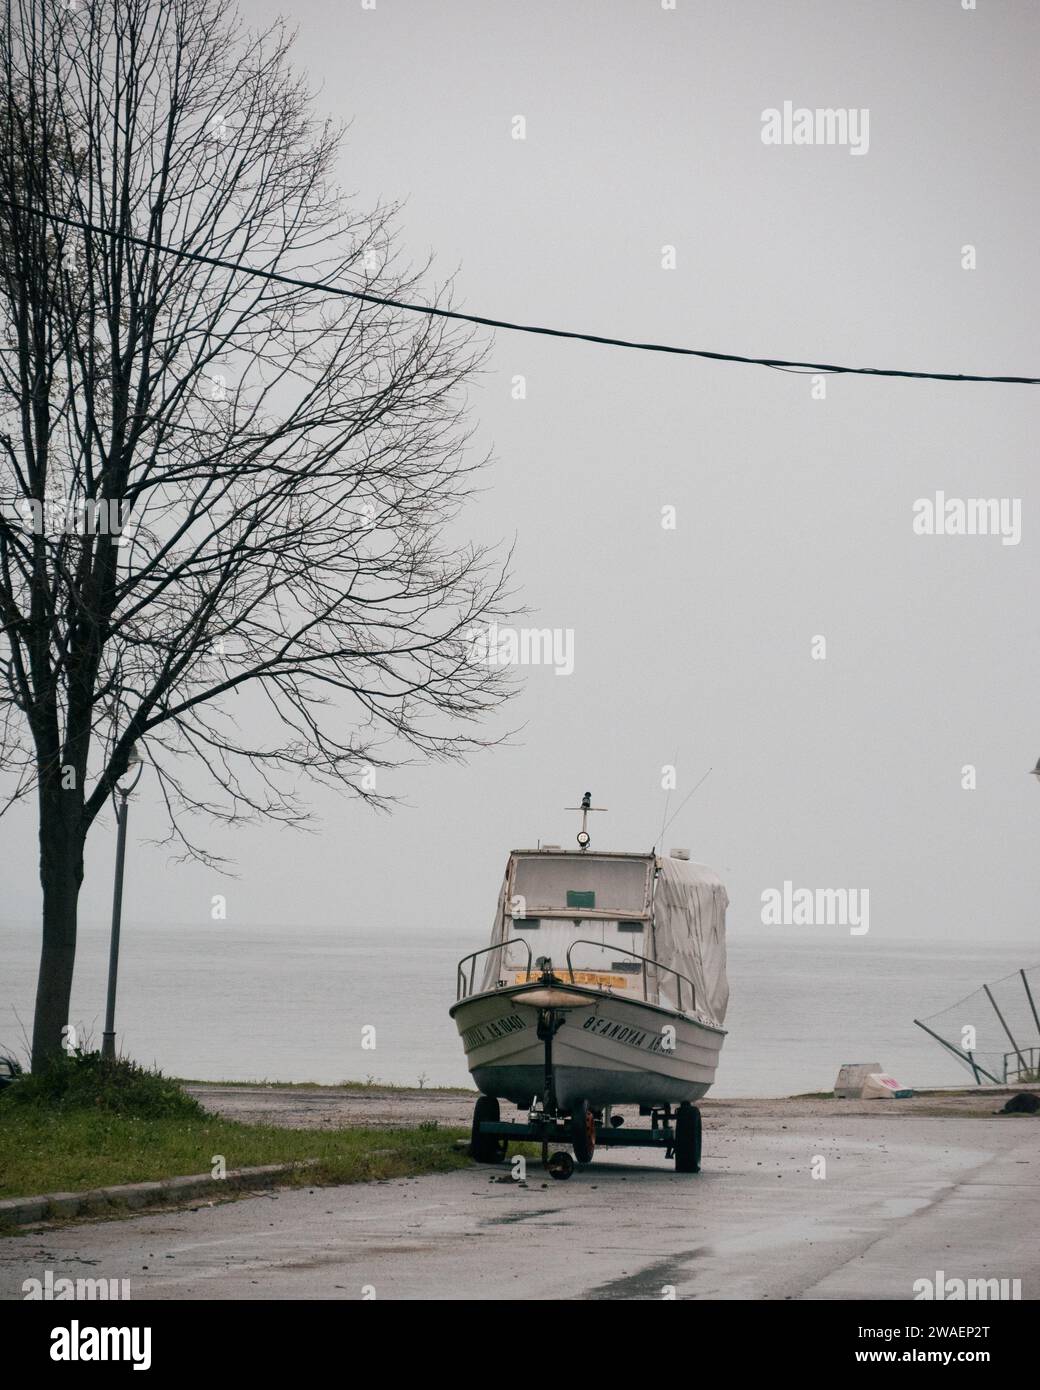 Piccola barca bianca sulla spiaggia in un villaggio greco in inverno accanto ad un albero senza foglie in Makedonia, Grecia Foto Stock